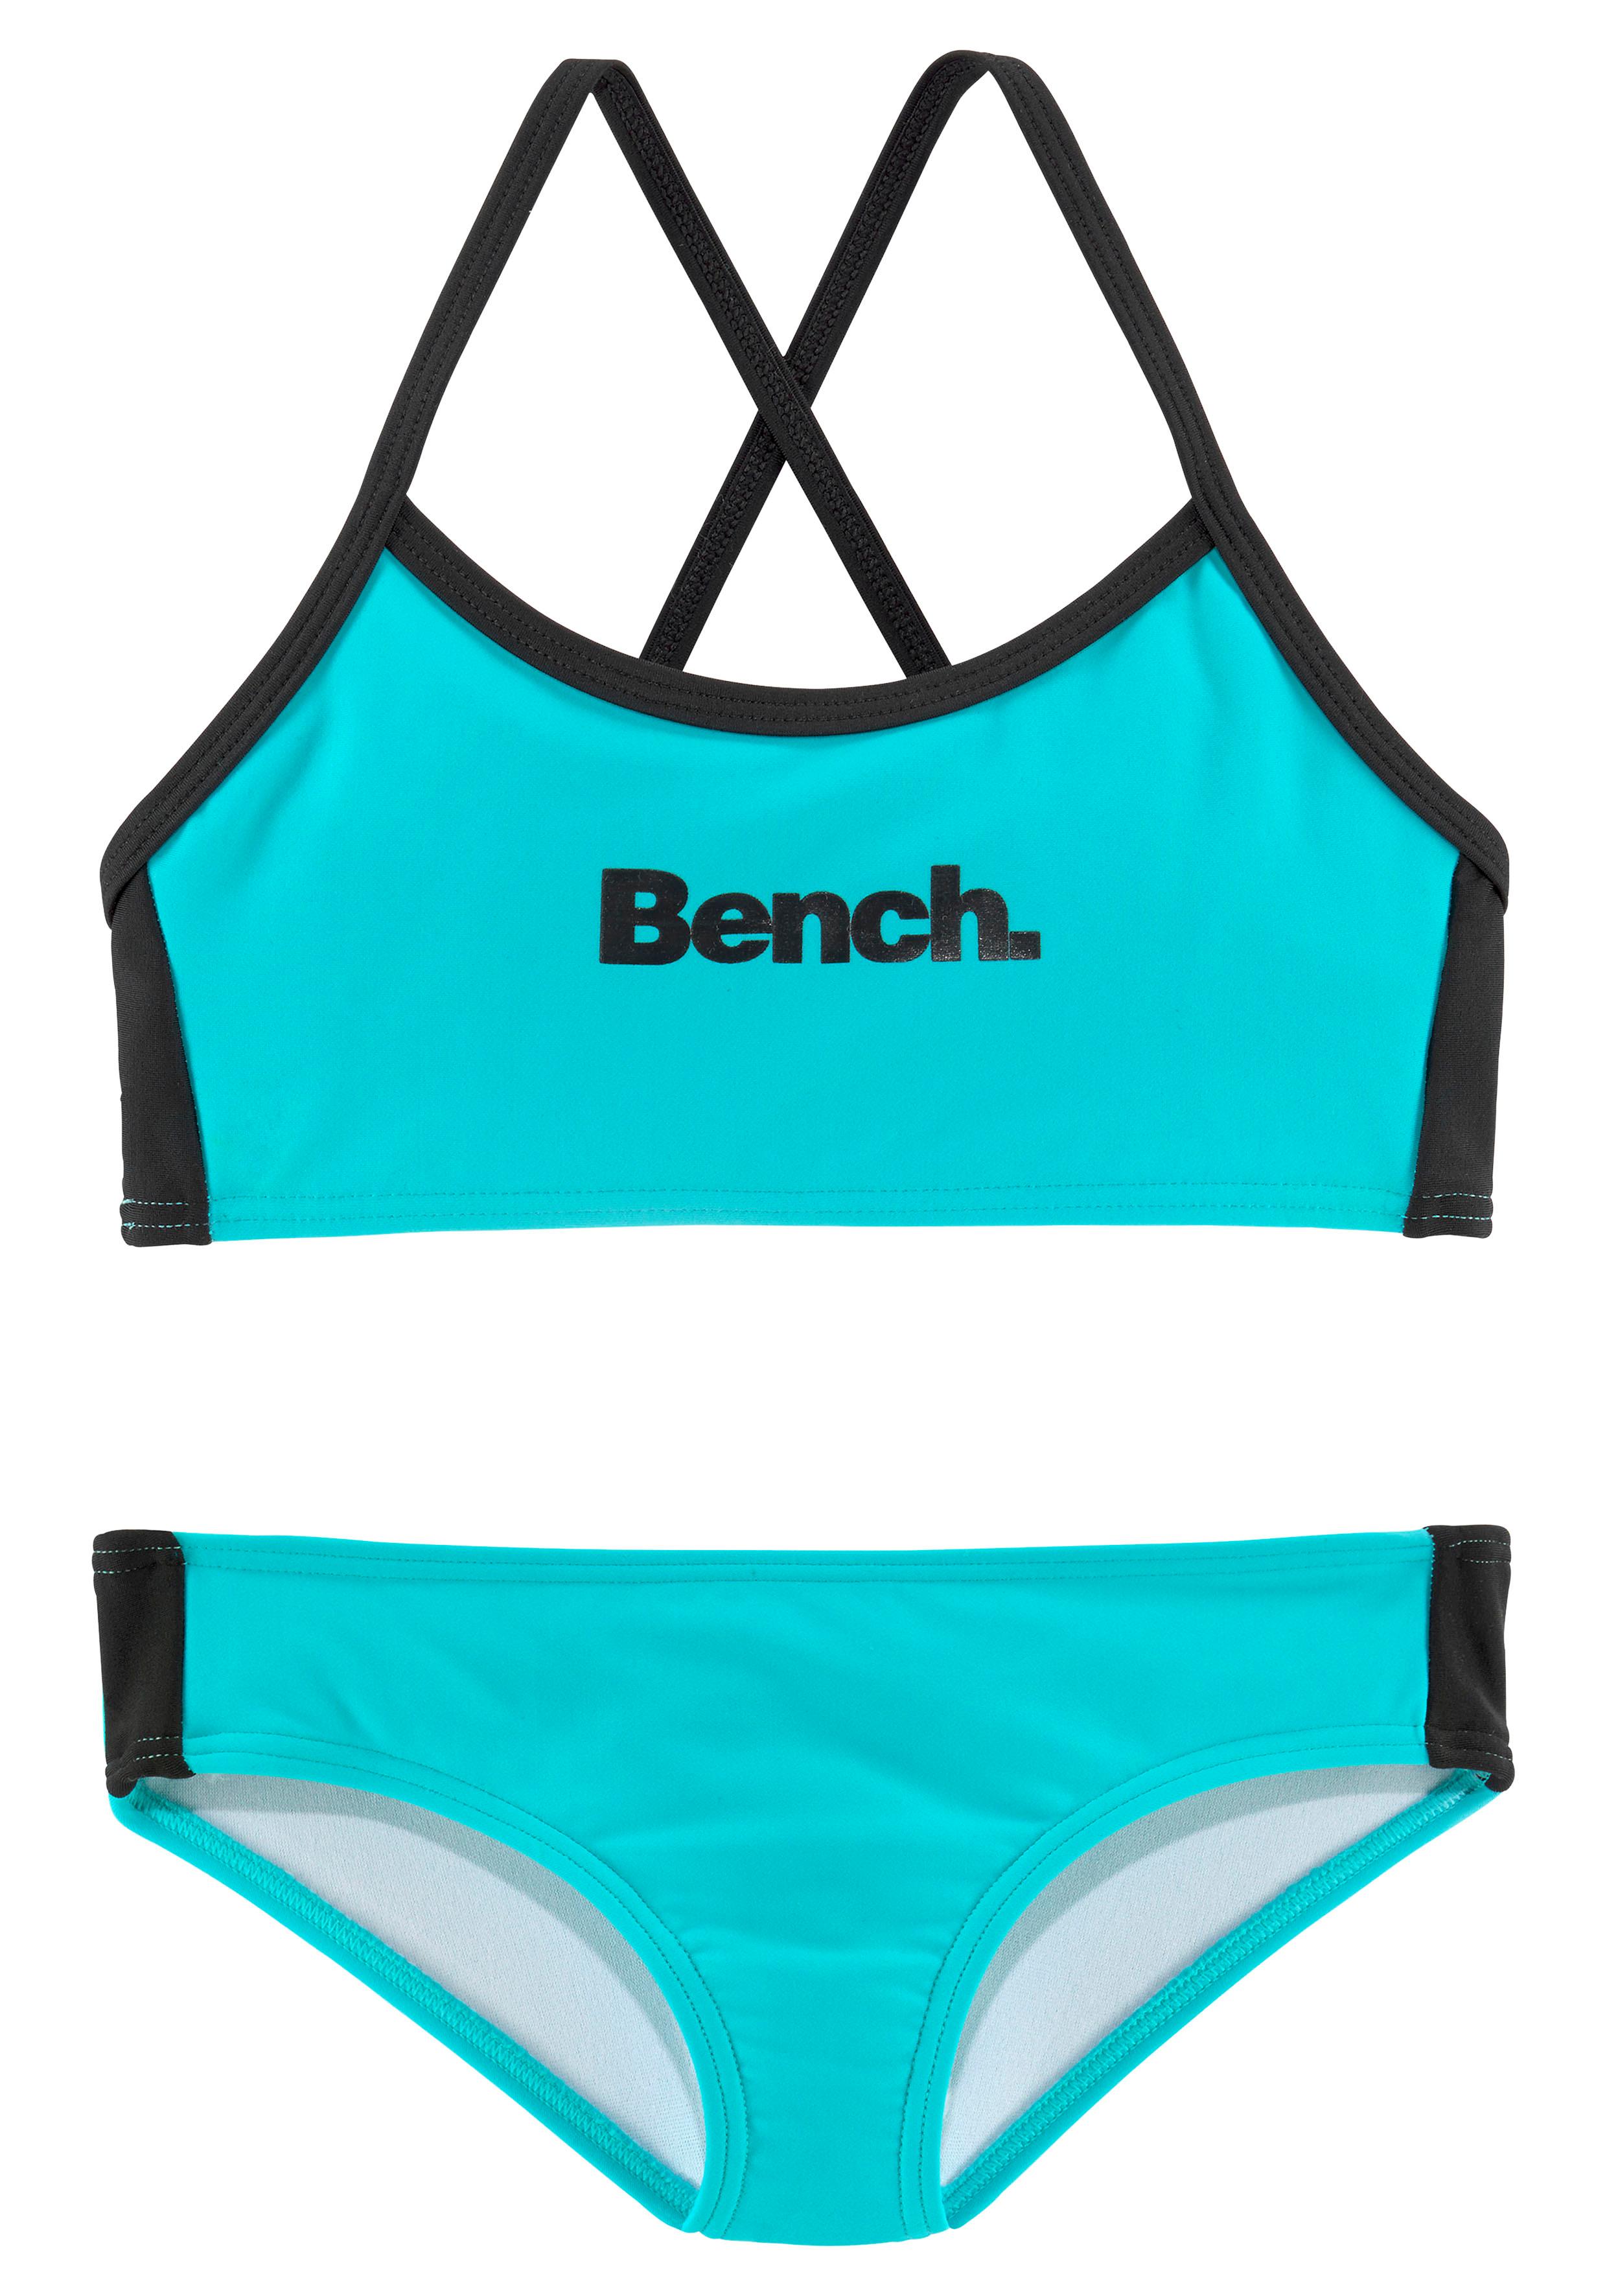 Bench. Triangel-Bikini, mit Logoprint und an Hose bei Top